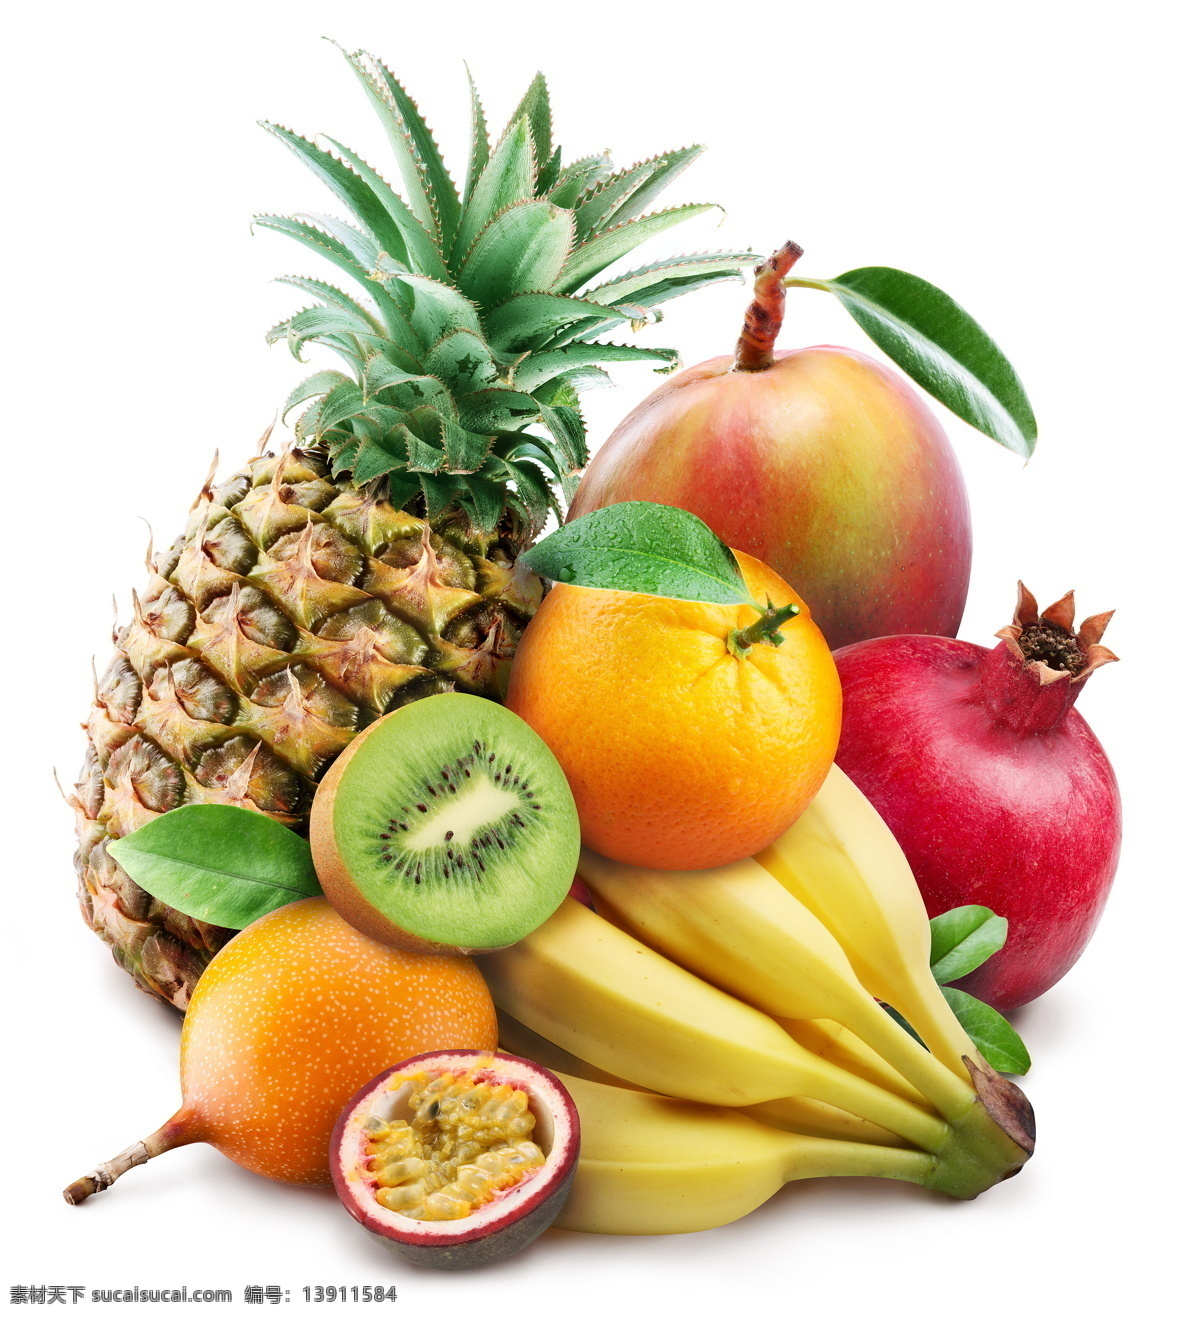 新鲜 水果 猕猴桃 香蕉 菠萝 苹果 新鲜水果 果实 水果摄影 水果蔬菜 水果图片 餐饮美食